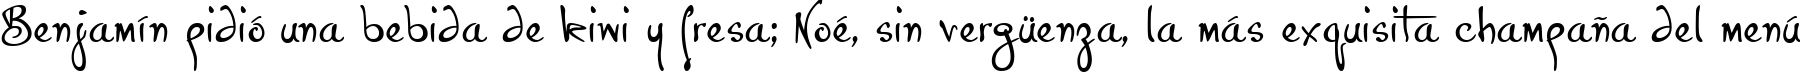 Пример написания шрифтом P22 Hopper Josephine текста на испанском